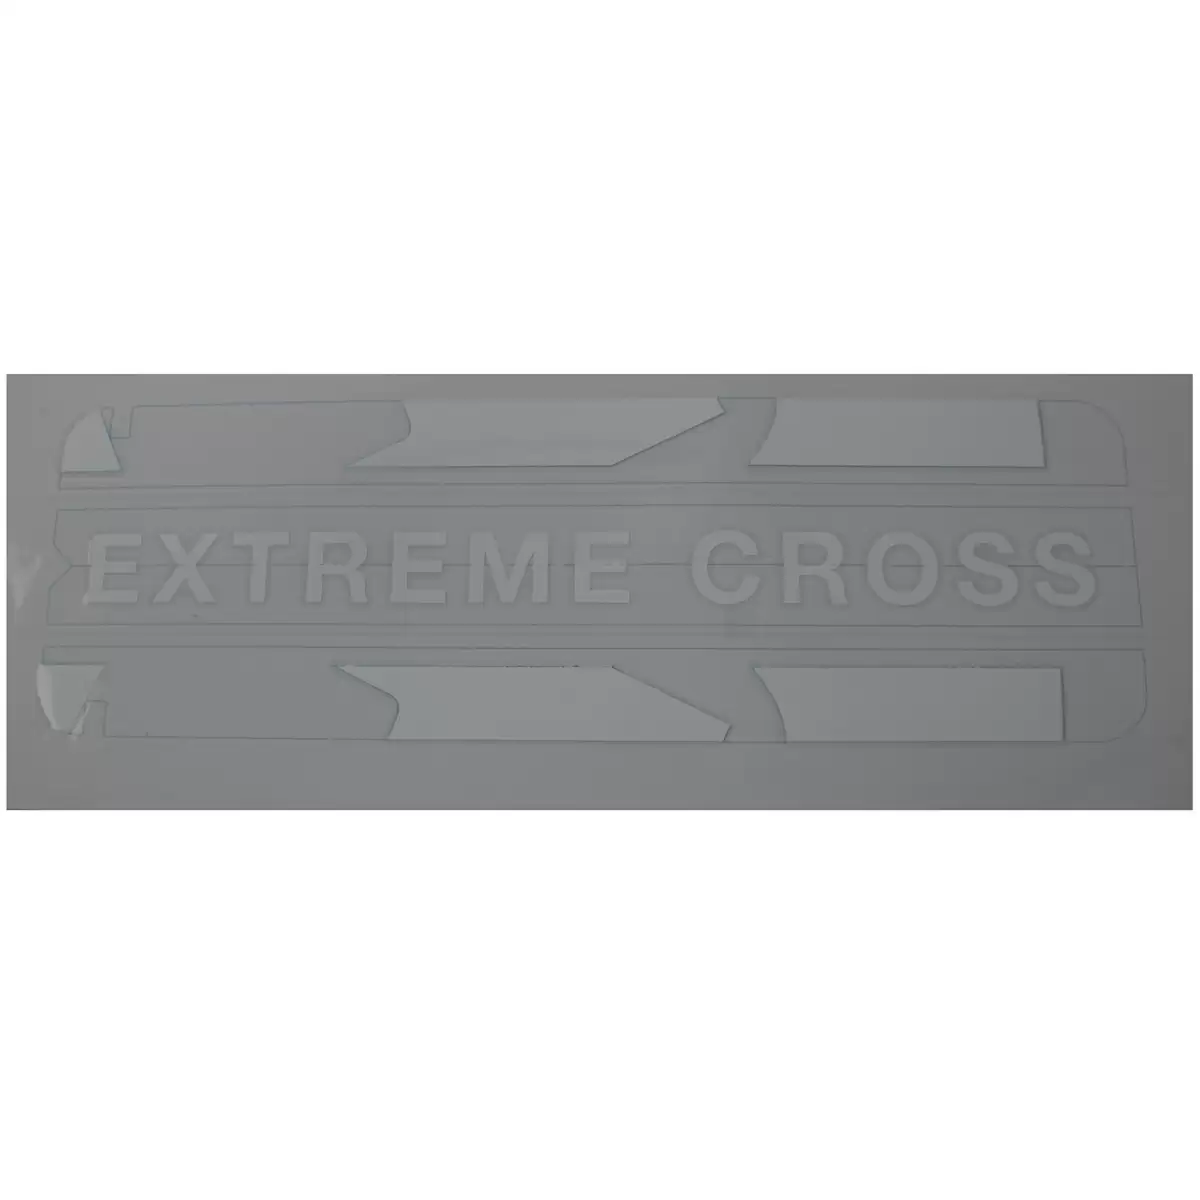 Adhesivo tapa batería Extreme Cross blanco - image